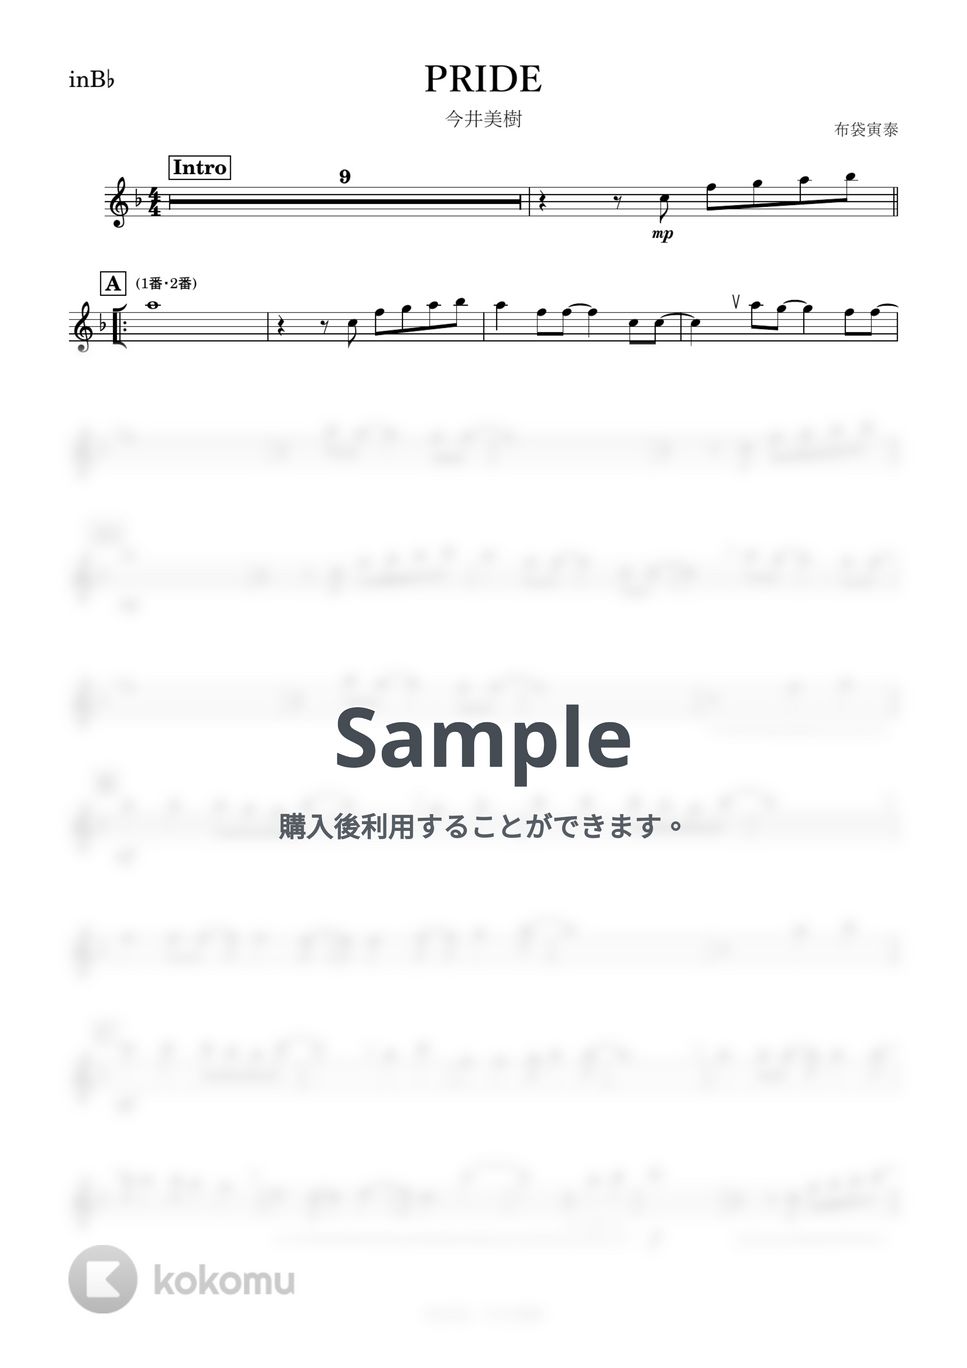 今井美樹 - PRIDE (B♭) by kanamusic